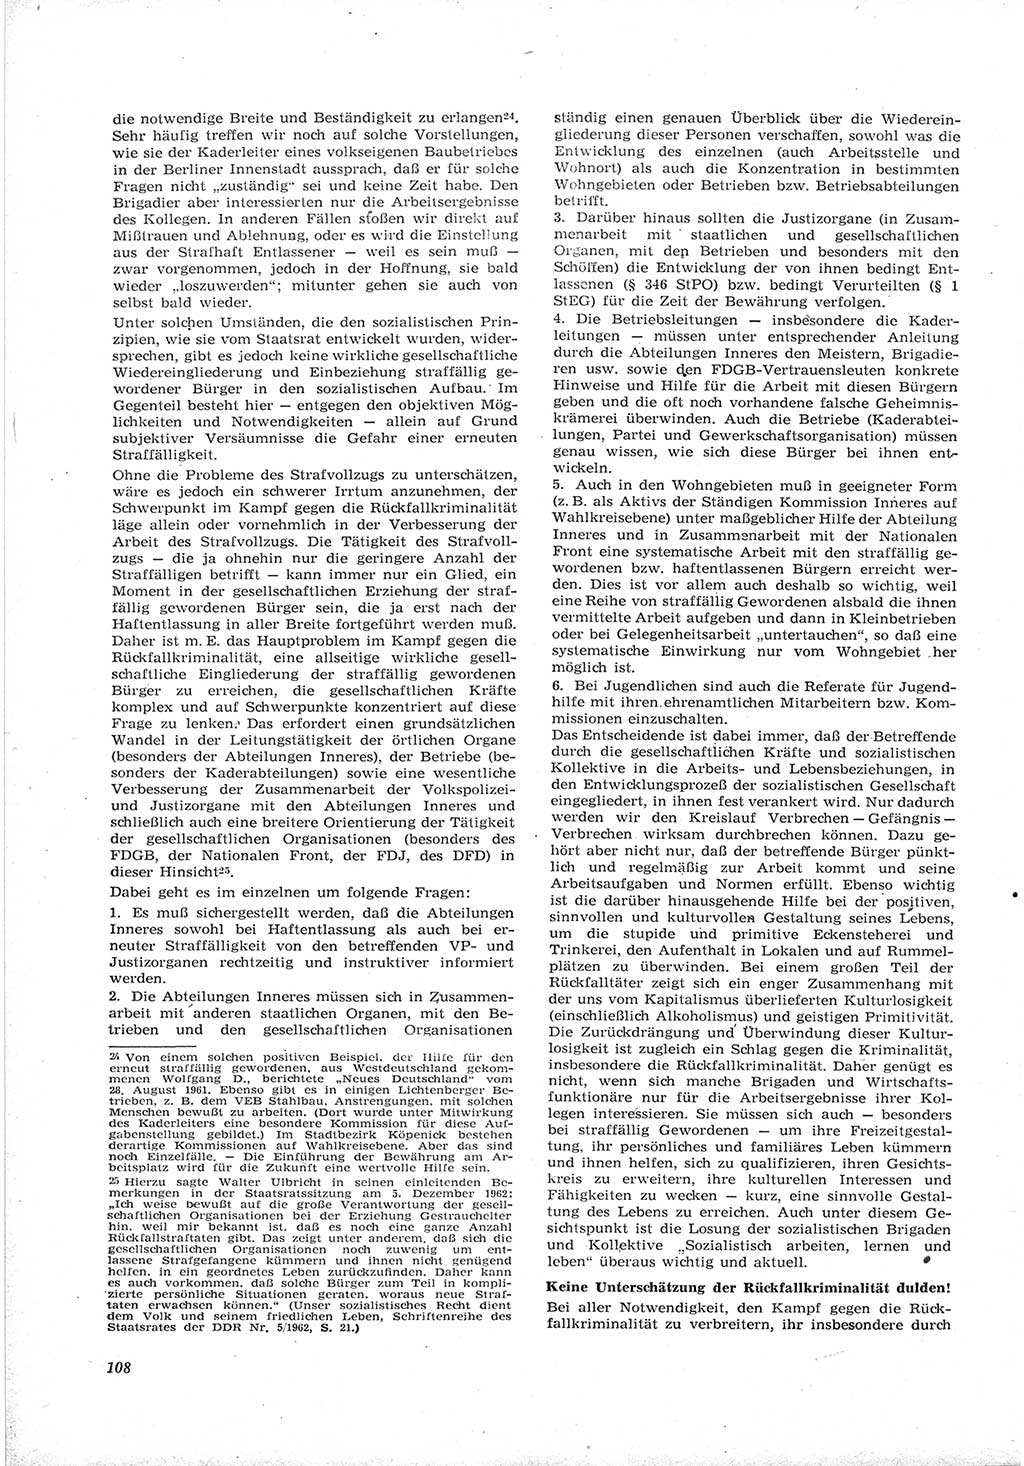 Neue Justiz (NJ), Zeitschrift für Recht und Rechtswissenschaft [Deutsche Demokratische Republik (DDR)], 17. Jahrgang 1963, Seite 108 (NJ DDR 1963, S. 108)